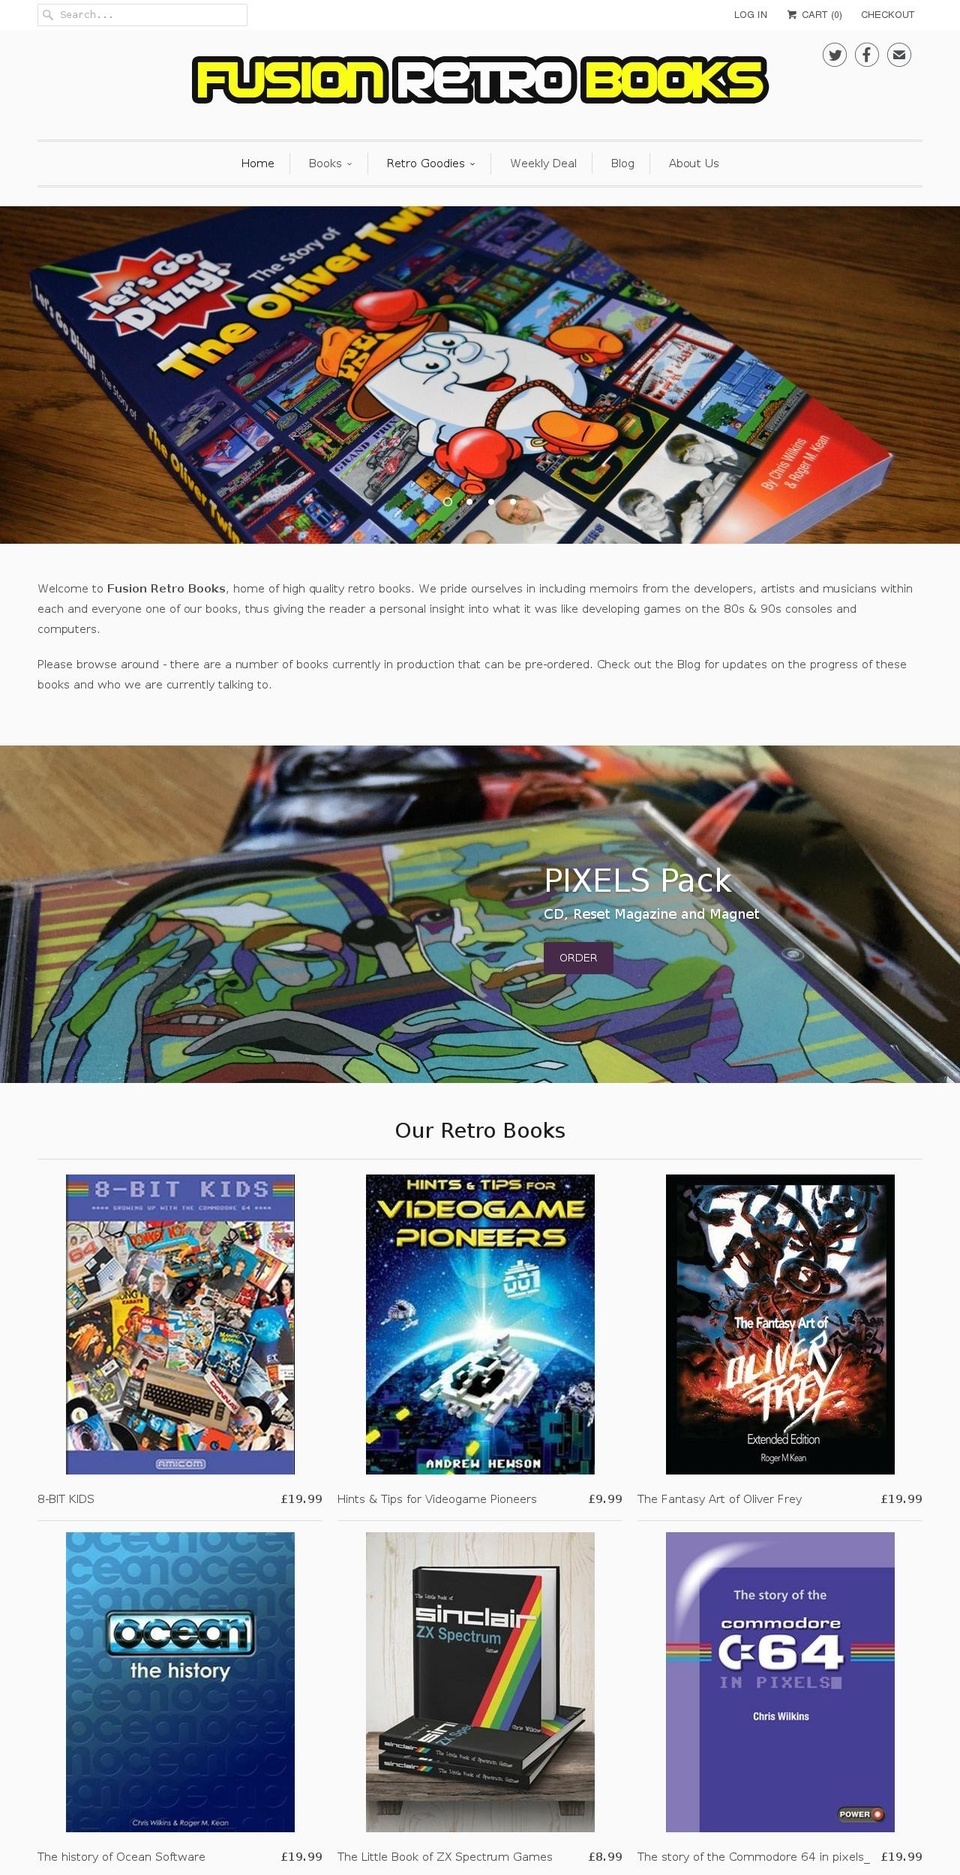 fusionretrobooks.com shopify website screenshot